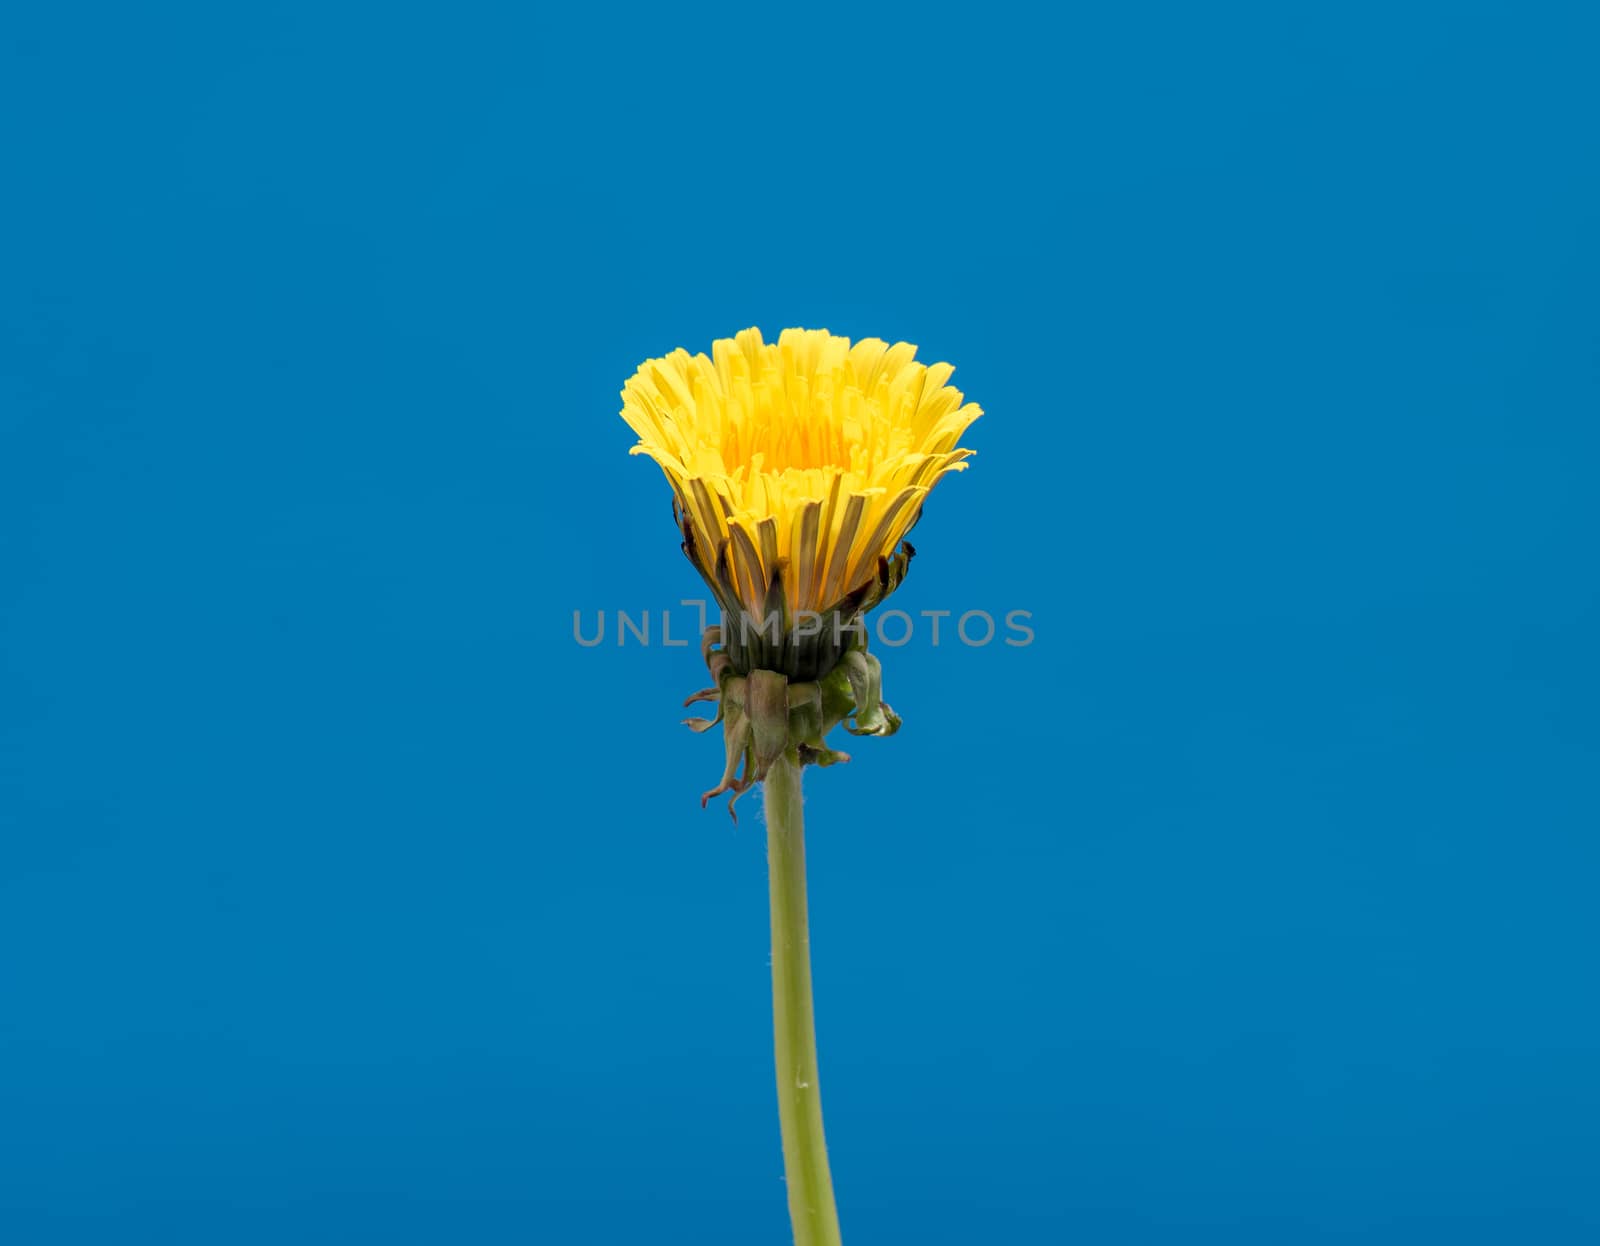 Dandelion flower in studio by fotostok_pdv